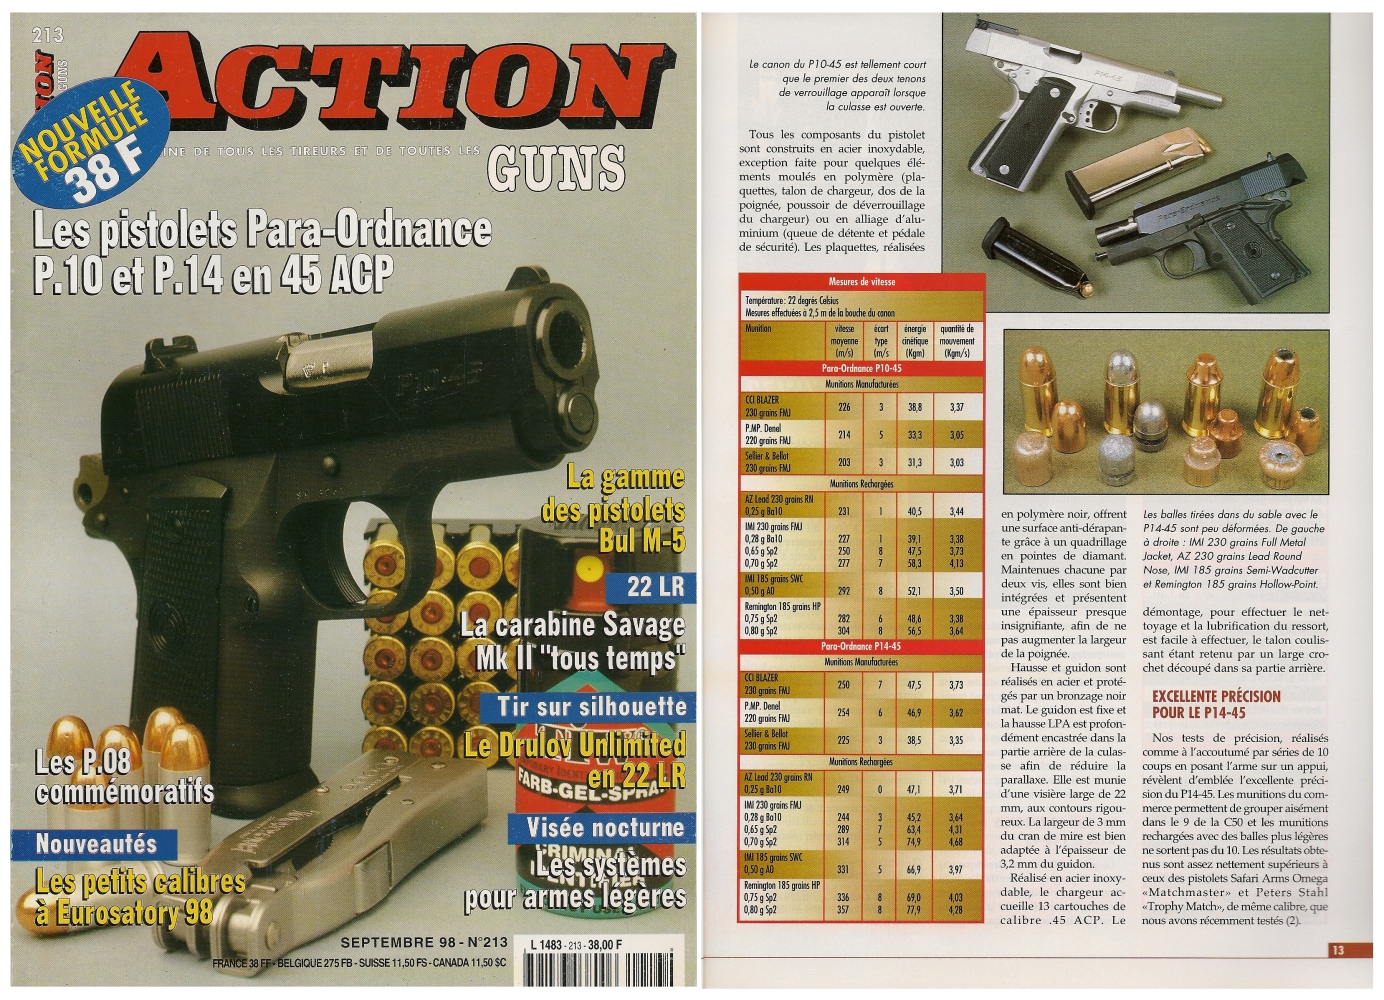 Le banc d'essai des pistolets Para-Ordnance P10-45 et P14-45 a été publié sur 6 pages dans le magazine Action Guns n° 213 (septembre 1998).